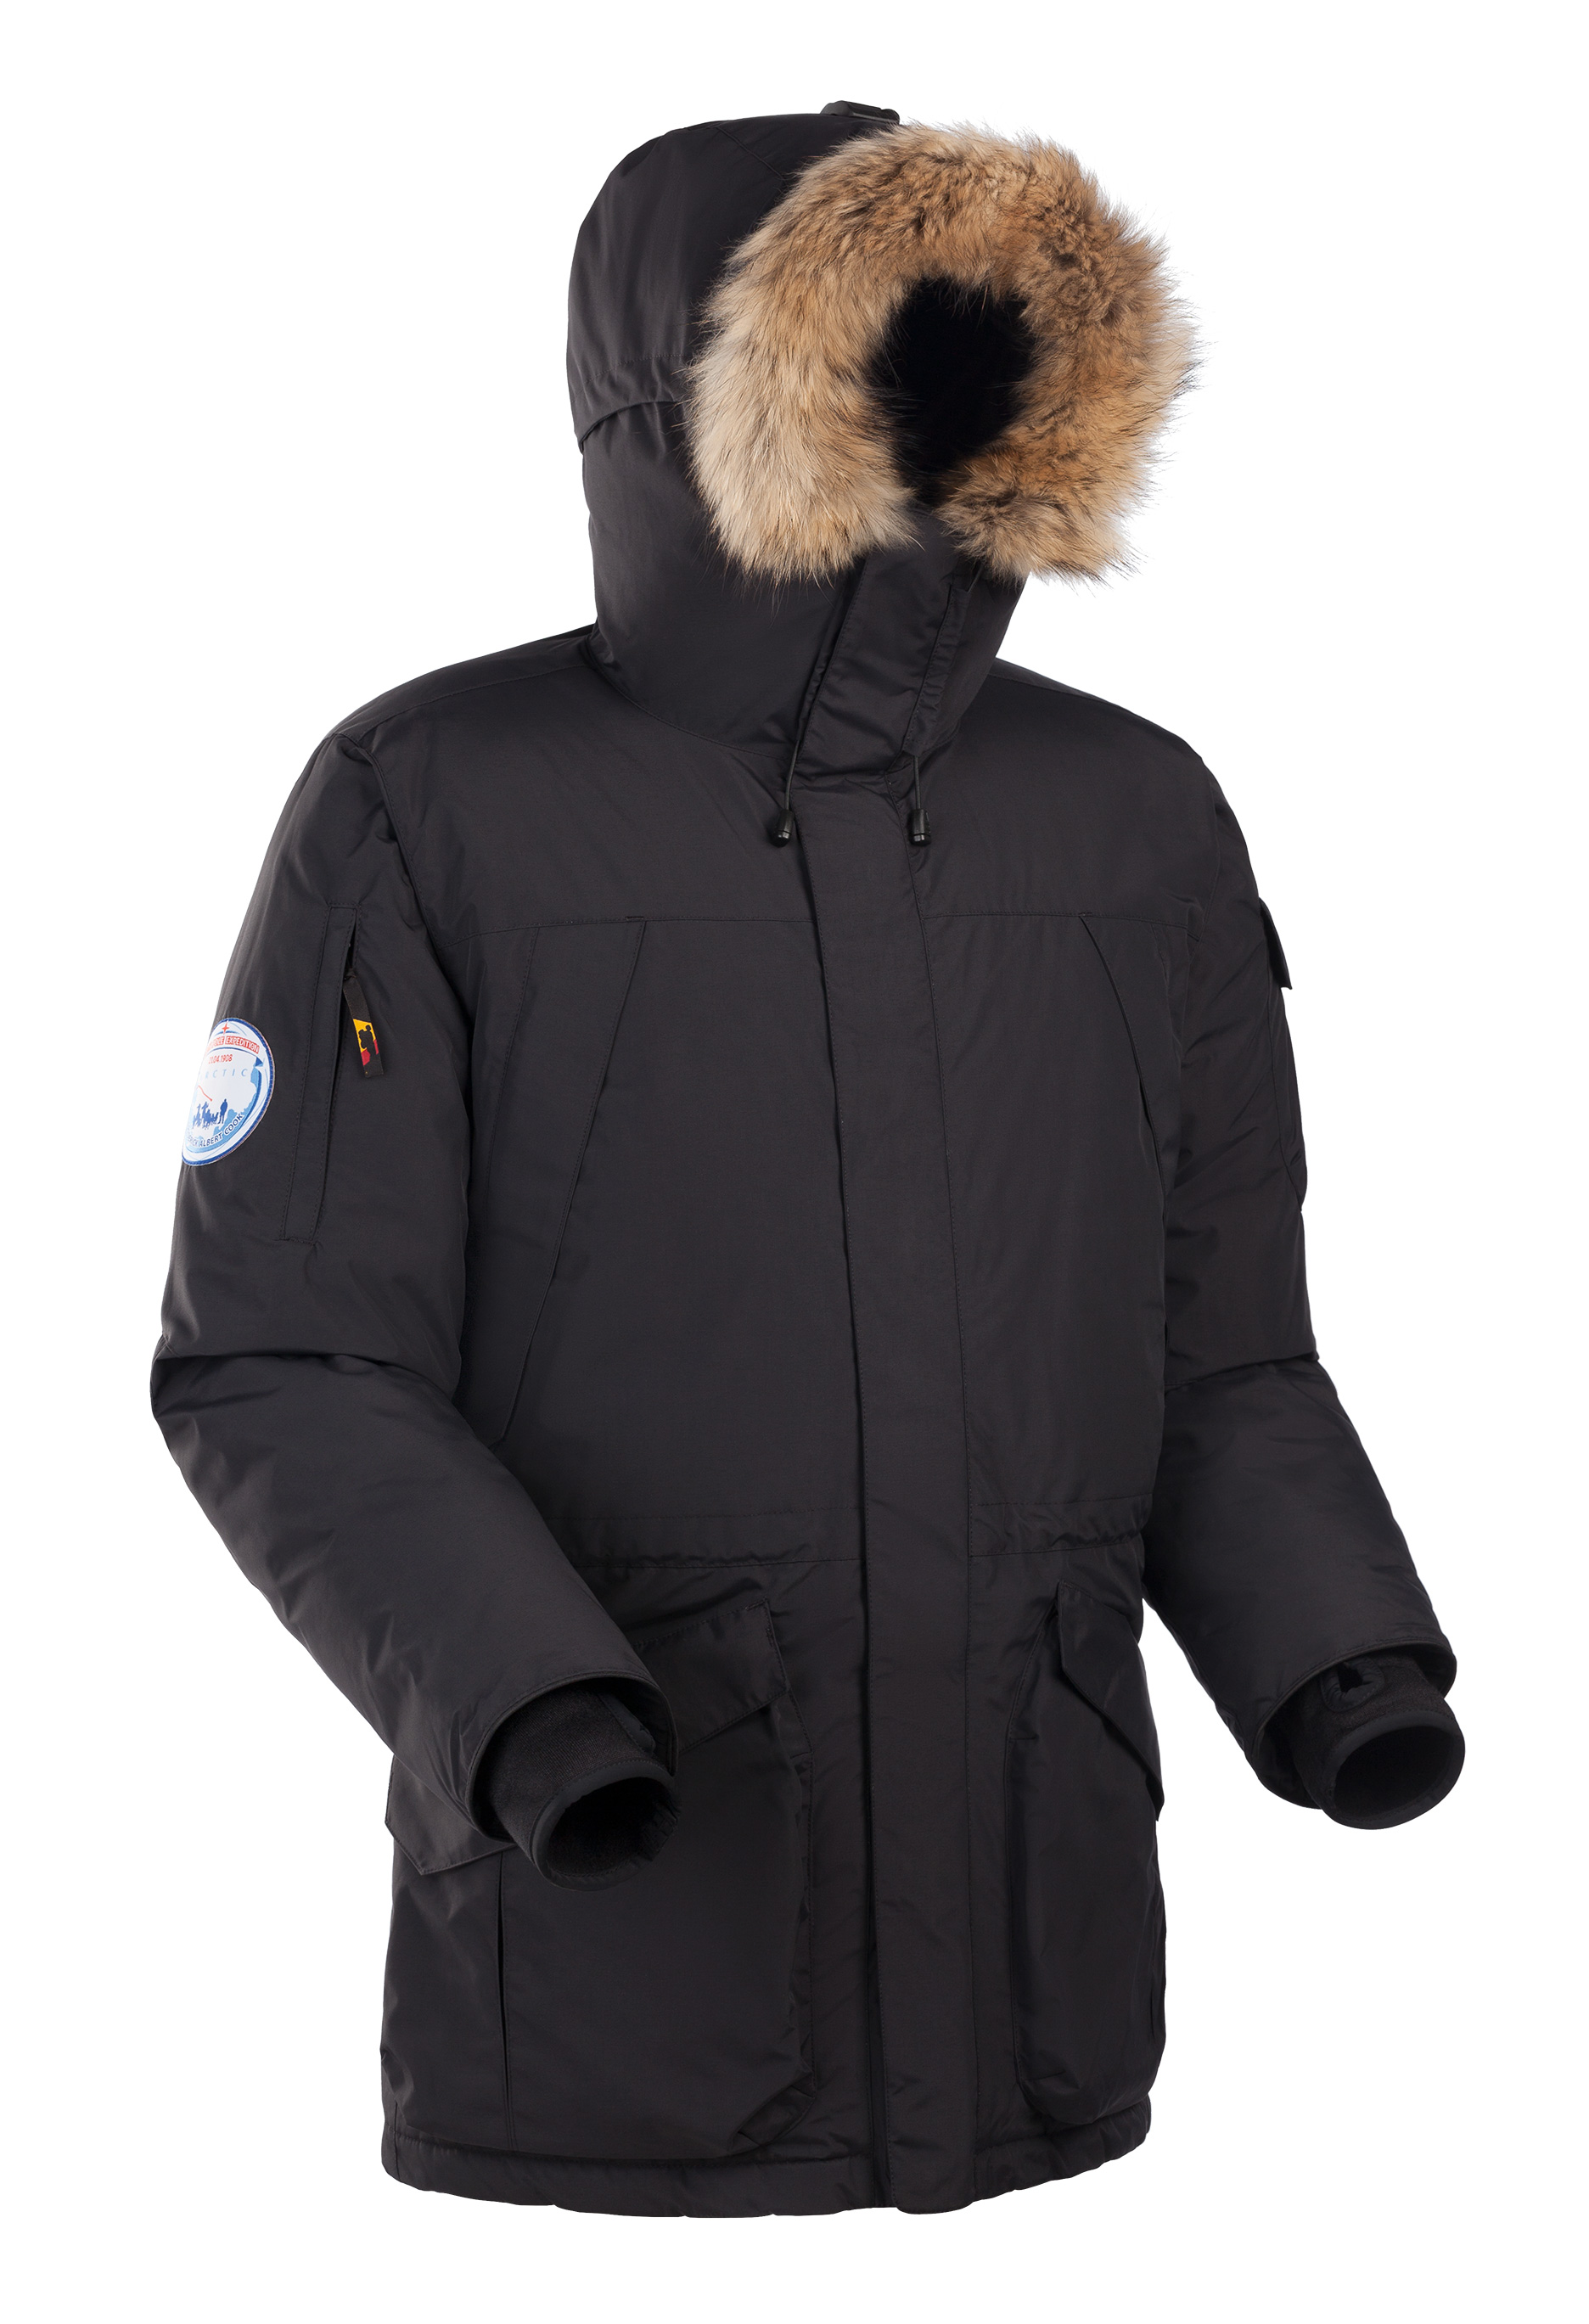 Аляска 2. Пуховик Bask Alaska v2. Bask Antarctic куртка мужская красная. Bask Аляска v2. Куртка Bask Аляска.